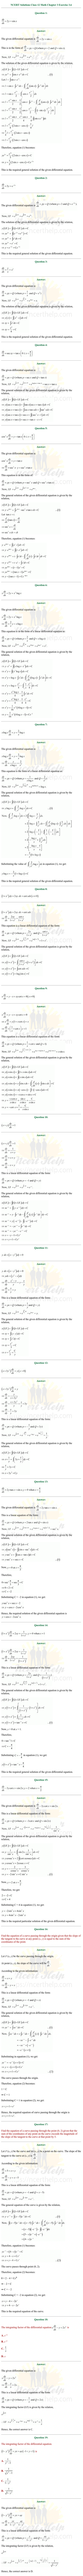 ex.9.6 Class 12 Math Chapter 9 ncert solutions